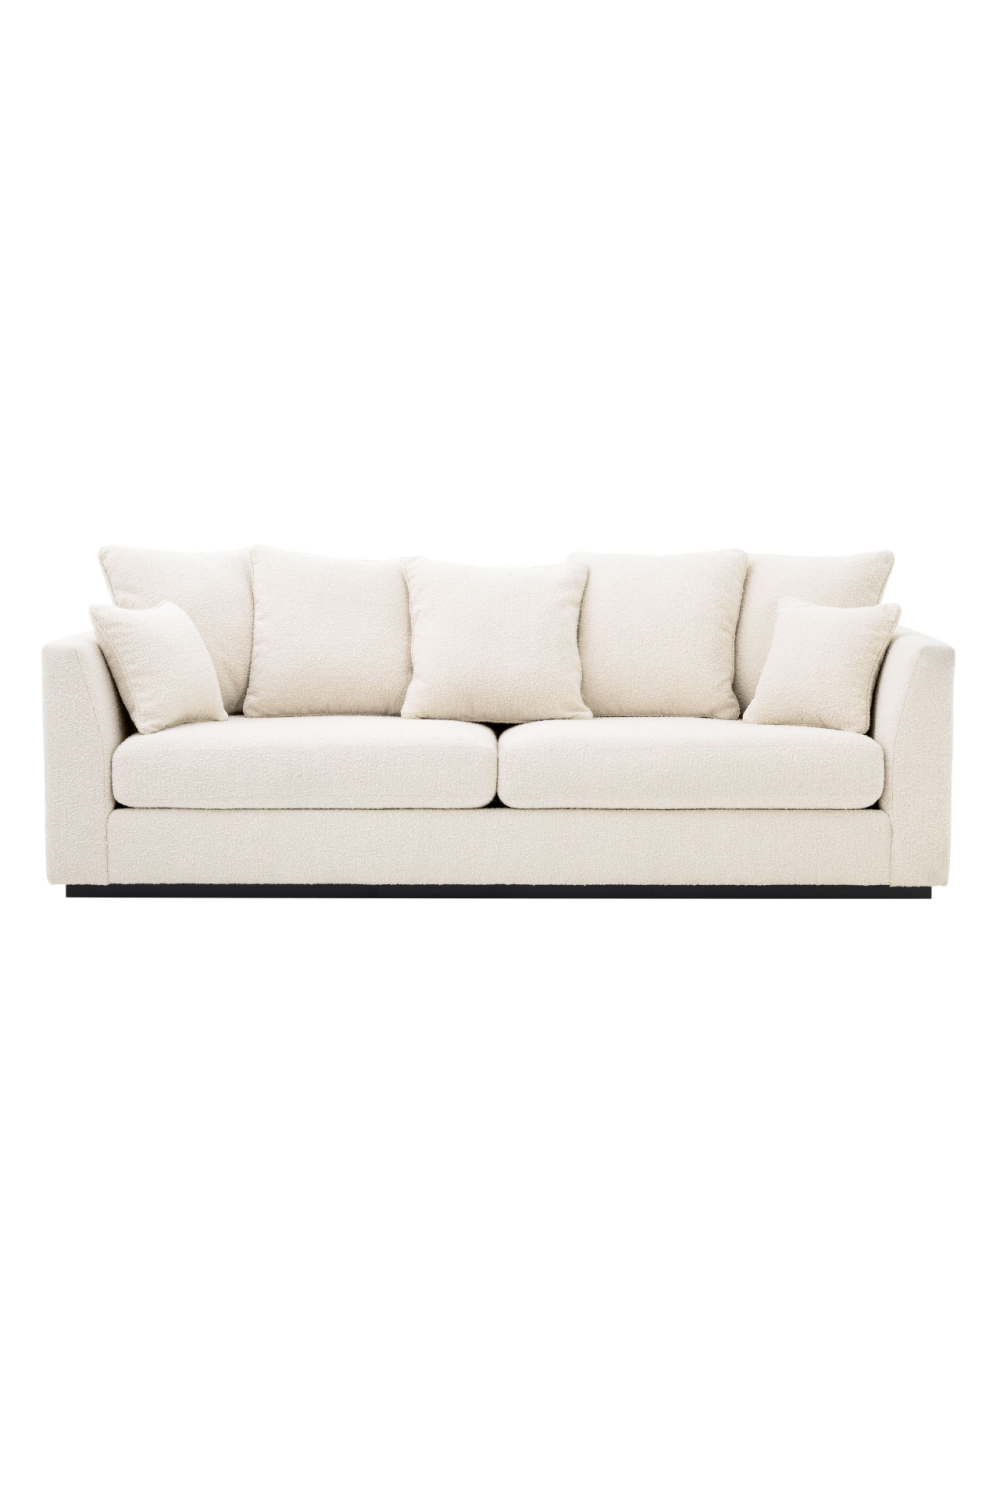 Cream Bouclé Sofa With Cushions | Eichholtz Taylor | Oroa.com